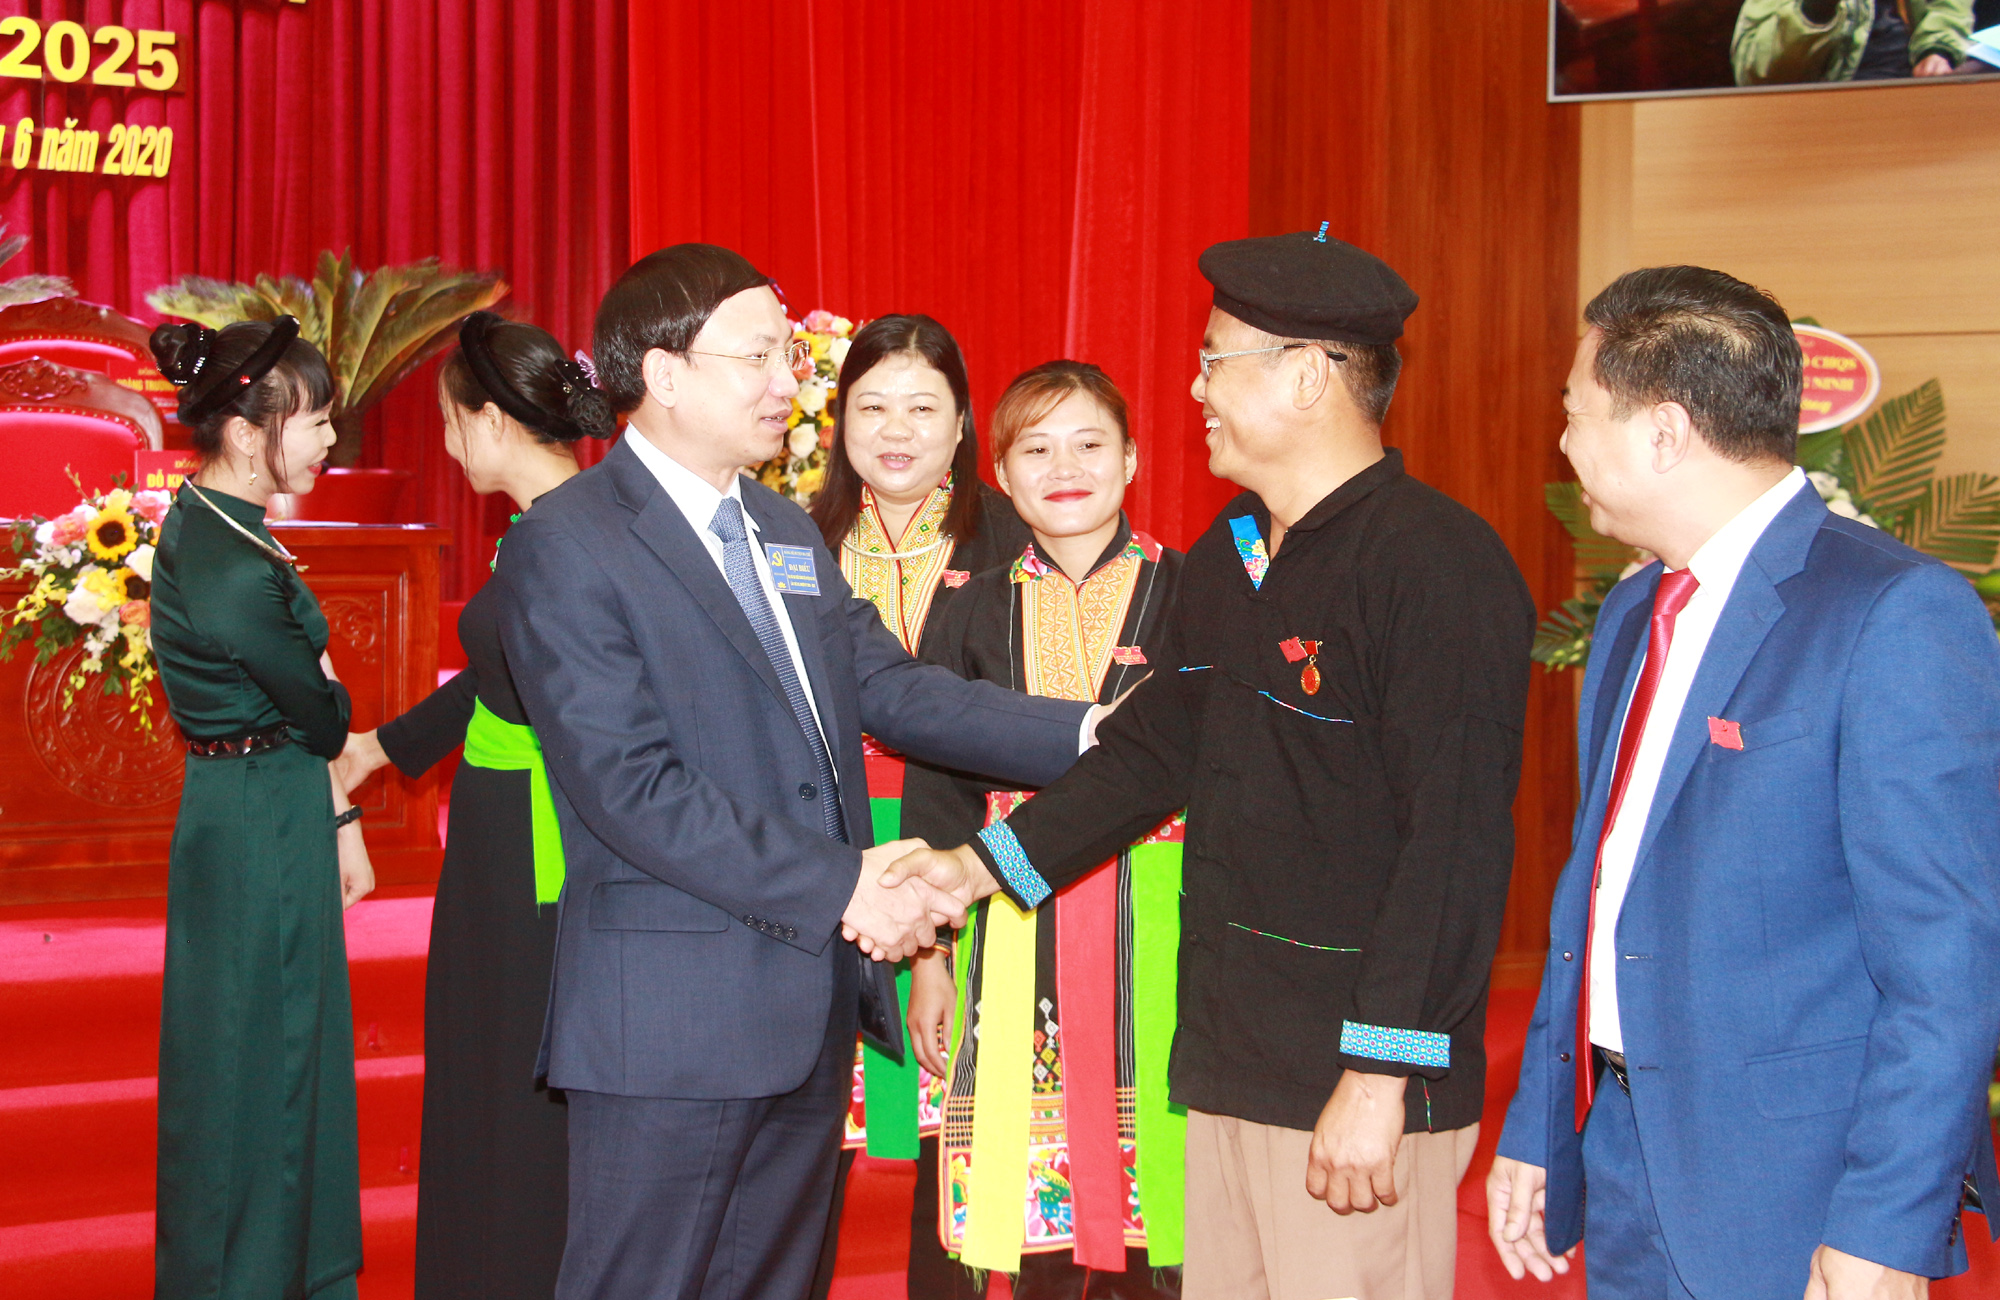 Đồng chí Nguyễn Xuân Ký, Bí thư Tỉnh ủy, Chủ tịch HĐND tỉnh, trao đổi với các đảng viên tham dự Đại hội.